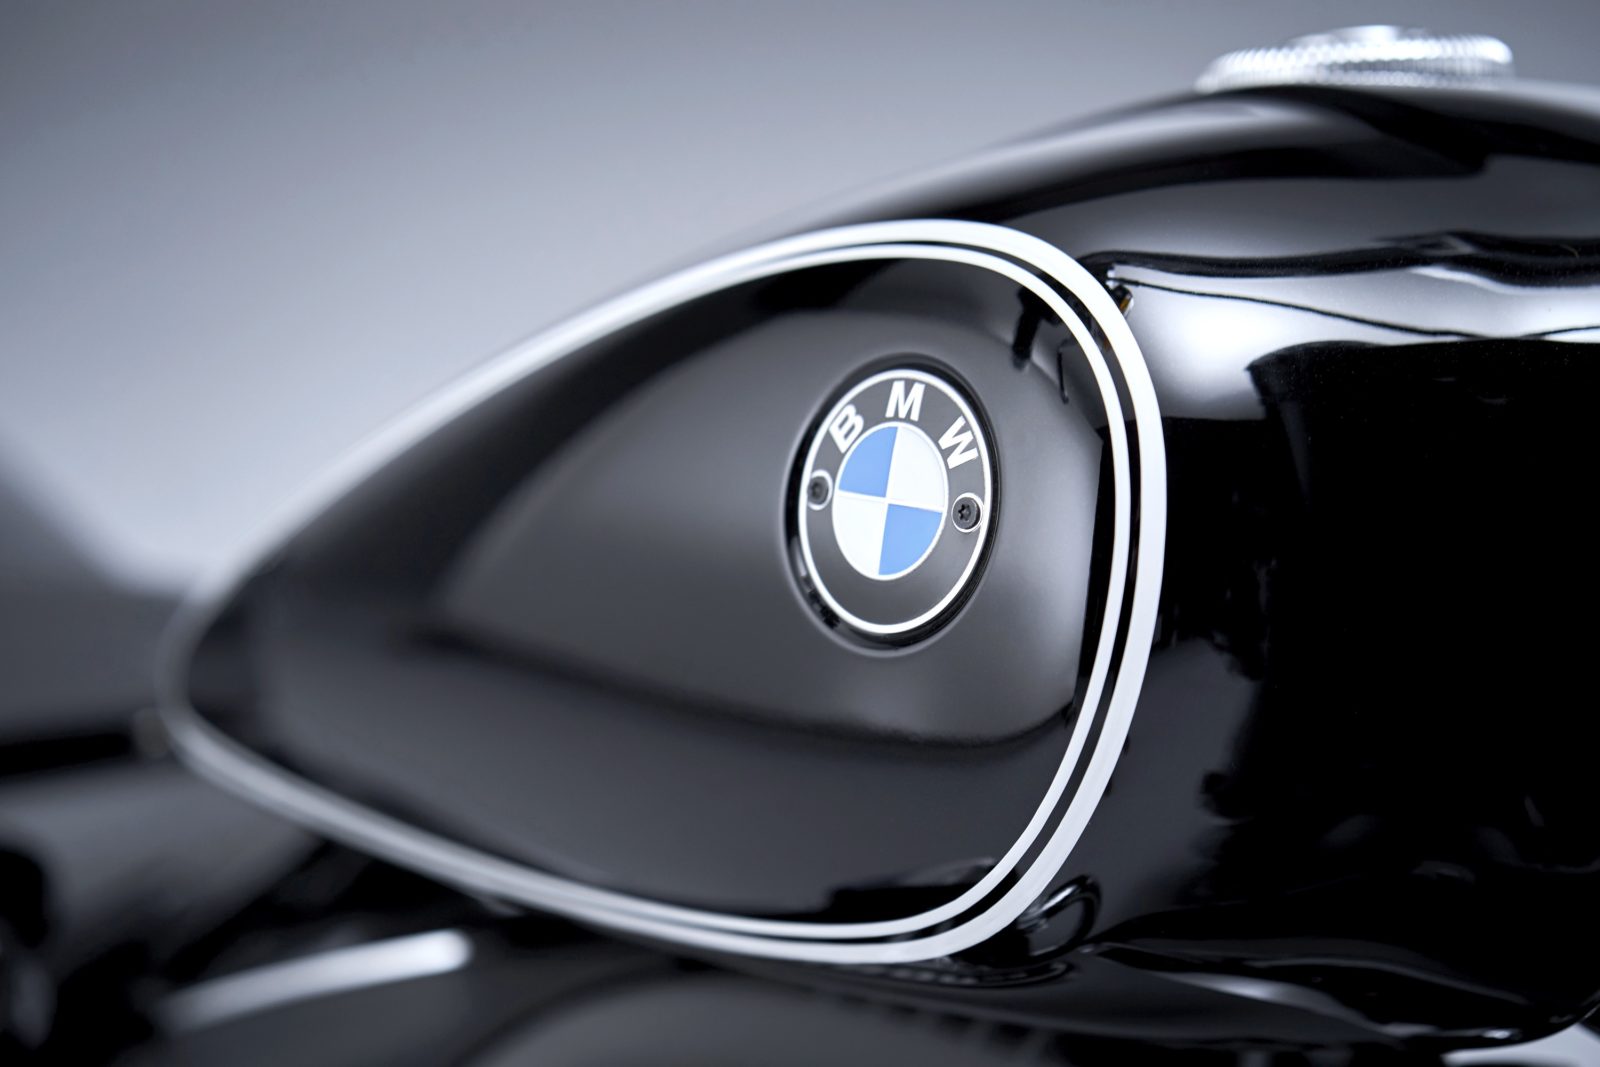 BMW R18 Informations fiche technique prix moto acceleration date de sortie